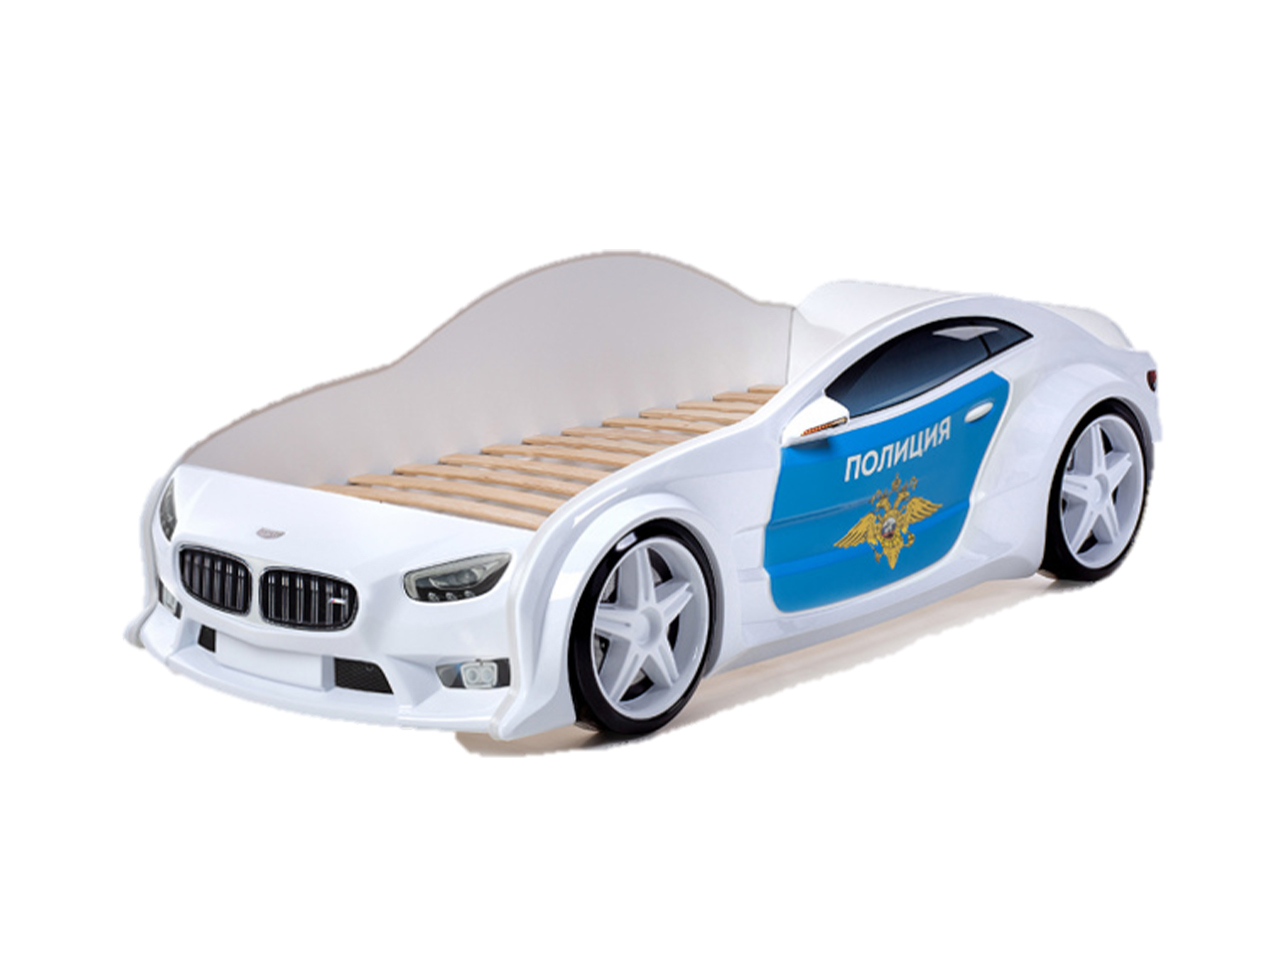 futuka kids детская мебель кровати машины